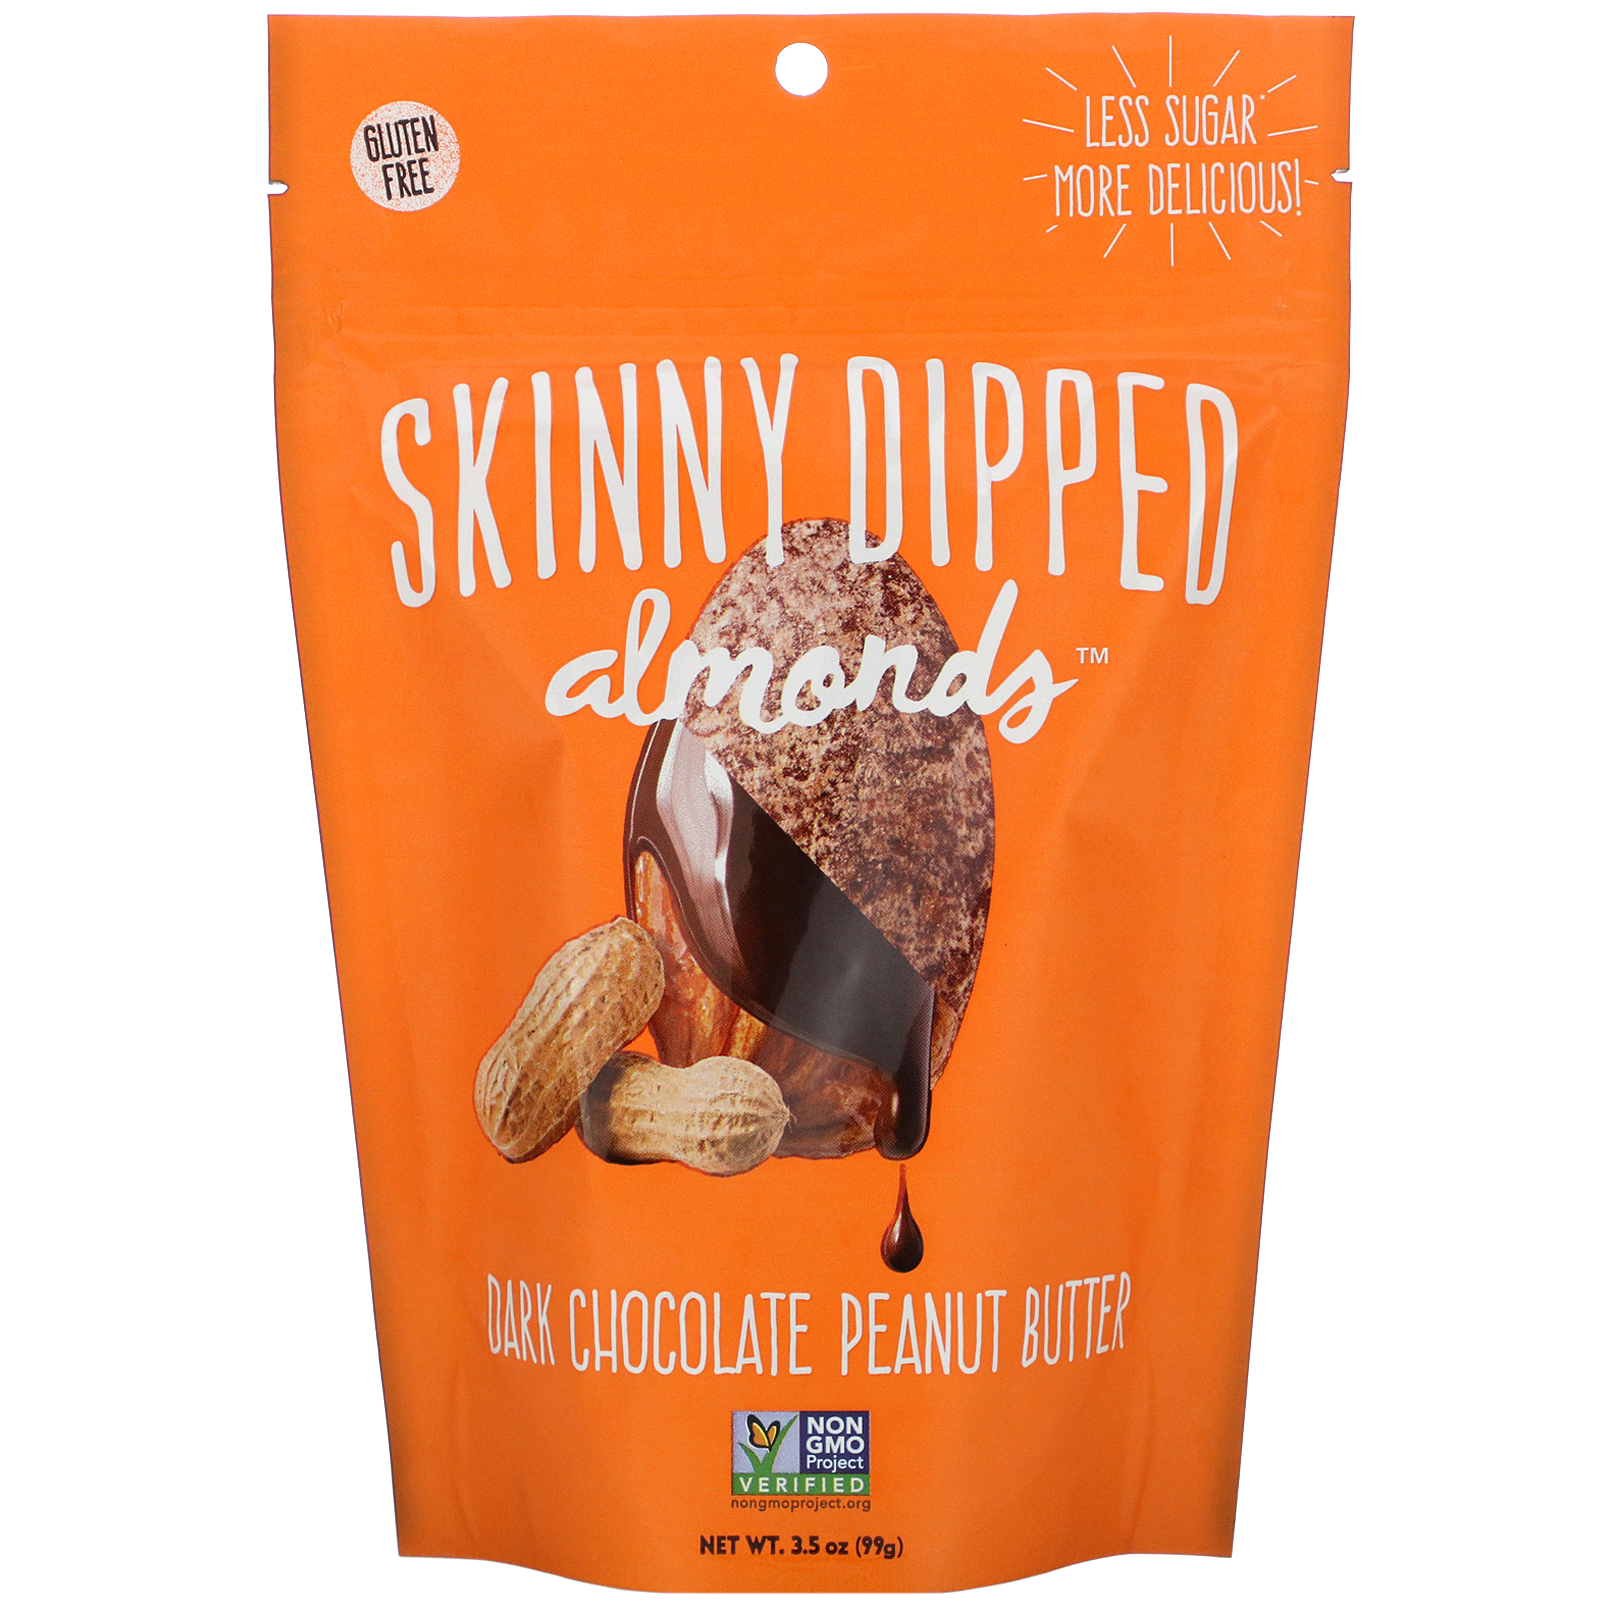 SkinnyDipped Almonds アーモンド ダークチョコレートピーナッツバター 99g 3.5オンス 新品 最安値挑戦